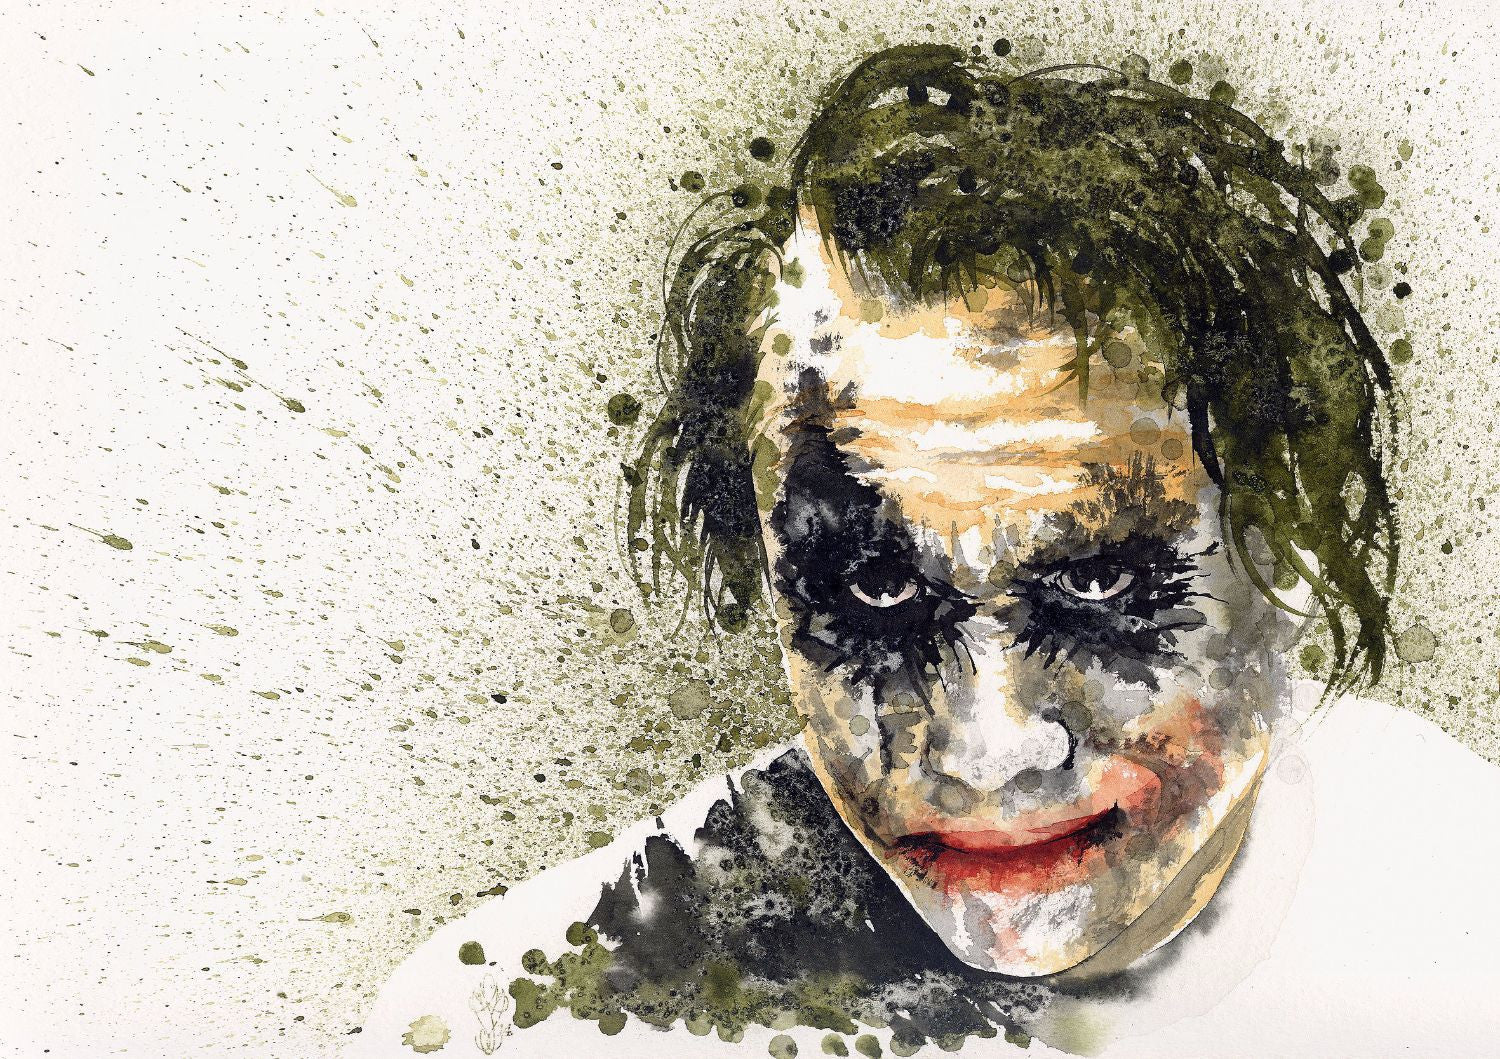 Heath Ledger, The Joker - Toons Mag